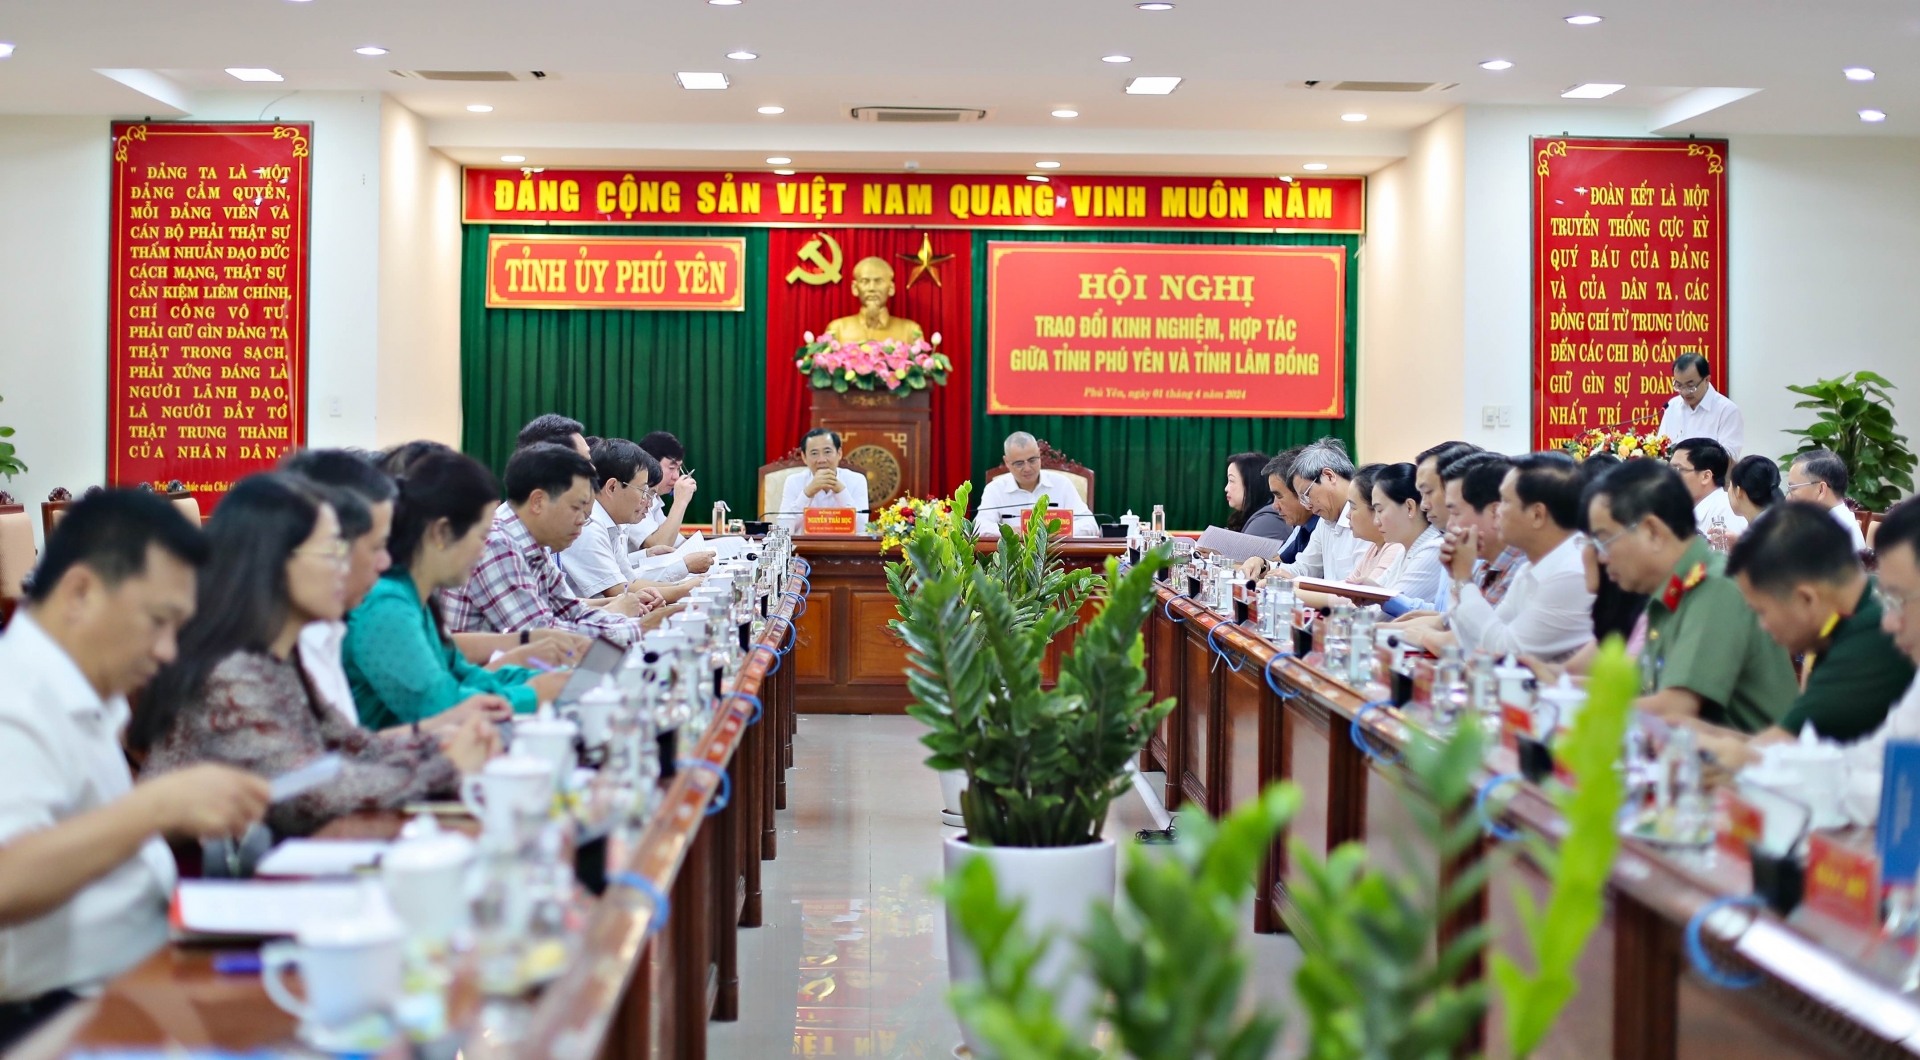 Lâm Đồng - Phú Yên tăng cường hợp tác, phát triển